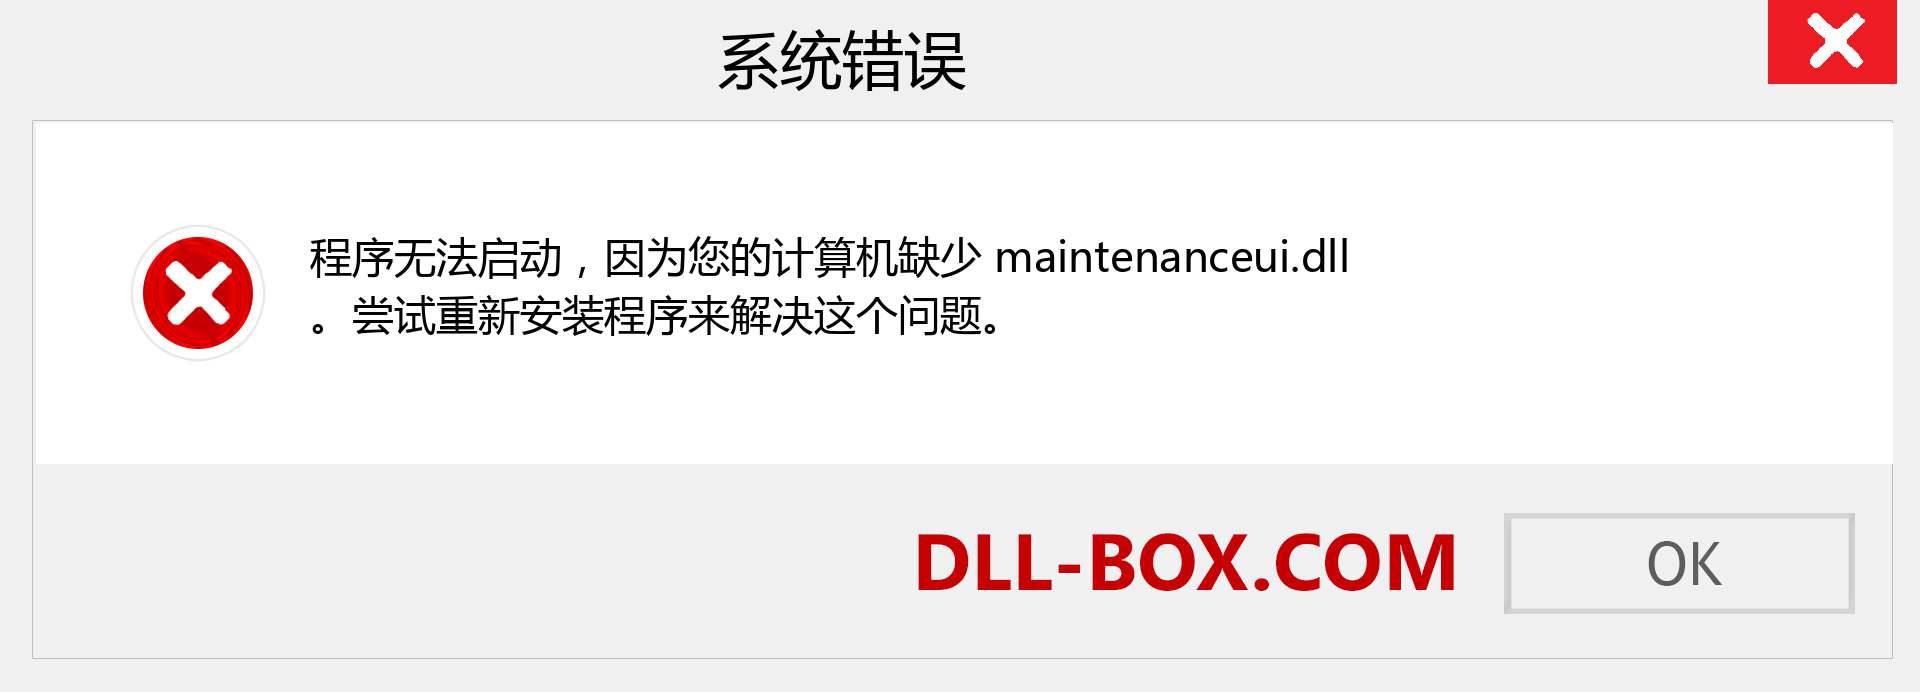 maintenanceui.dll 文件丢失？。 适用于 Windows 7、8、10 的下载 - 修复 Windows、照片、图像上的 maintenanceui dll 丢失错误